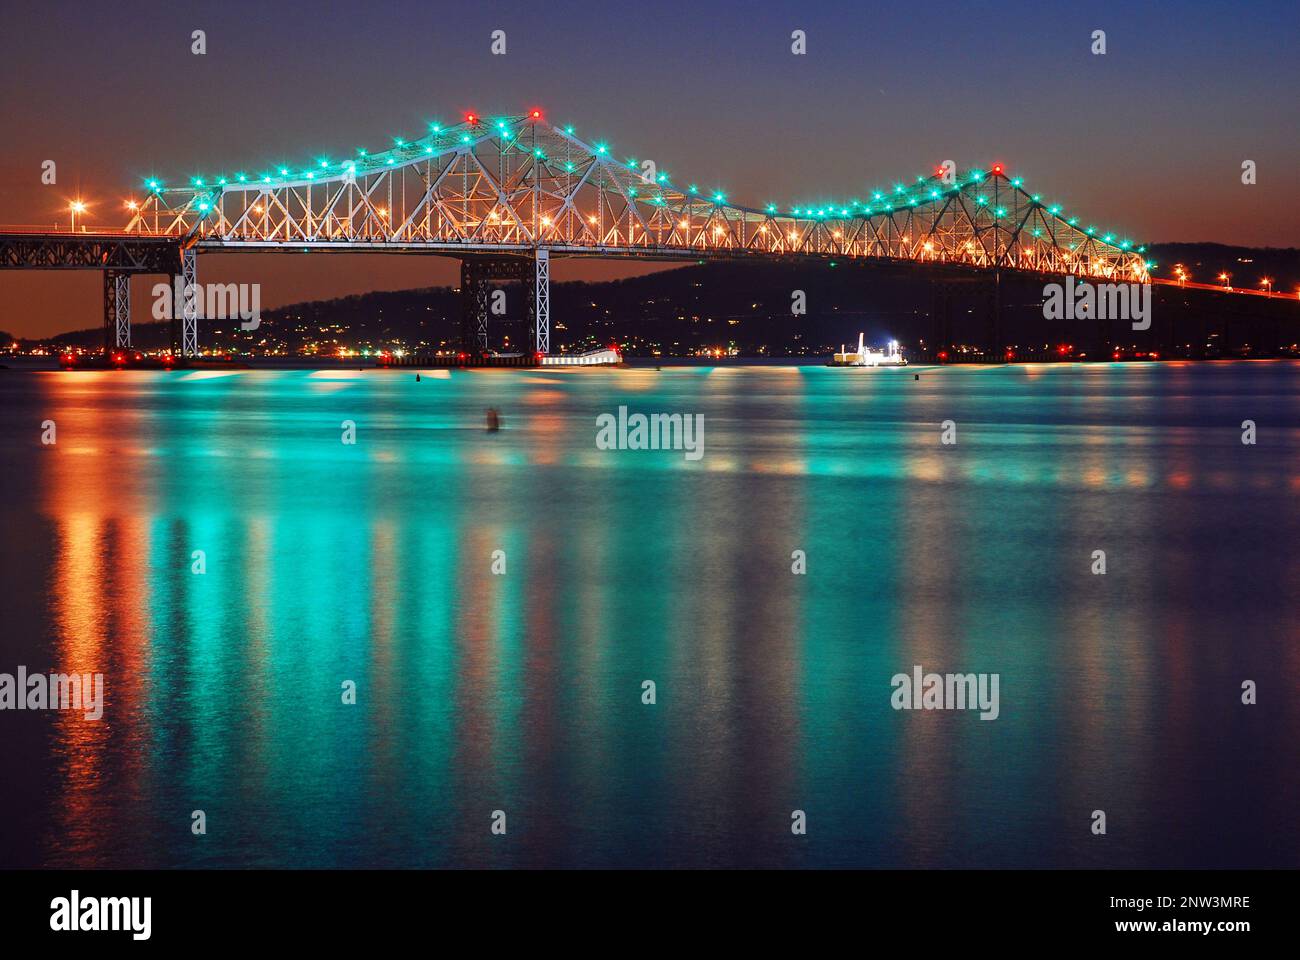 Les lumières de l'ancien pont Tappan Zee se reflètent dans l'eau calme de la rivière Hudson. La portée a été remplacée par une nouvelle conception en 2019 Banque D'Images